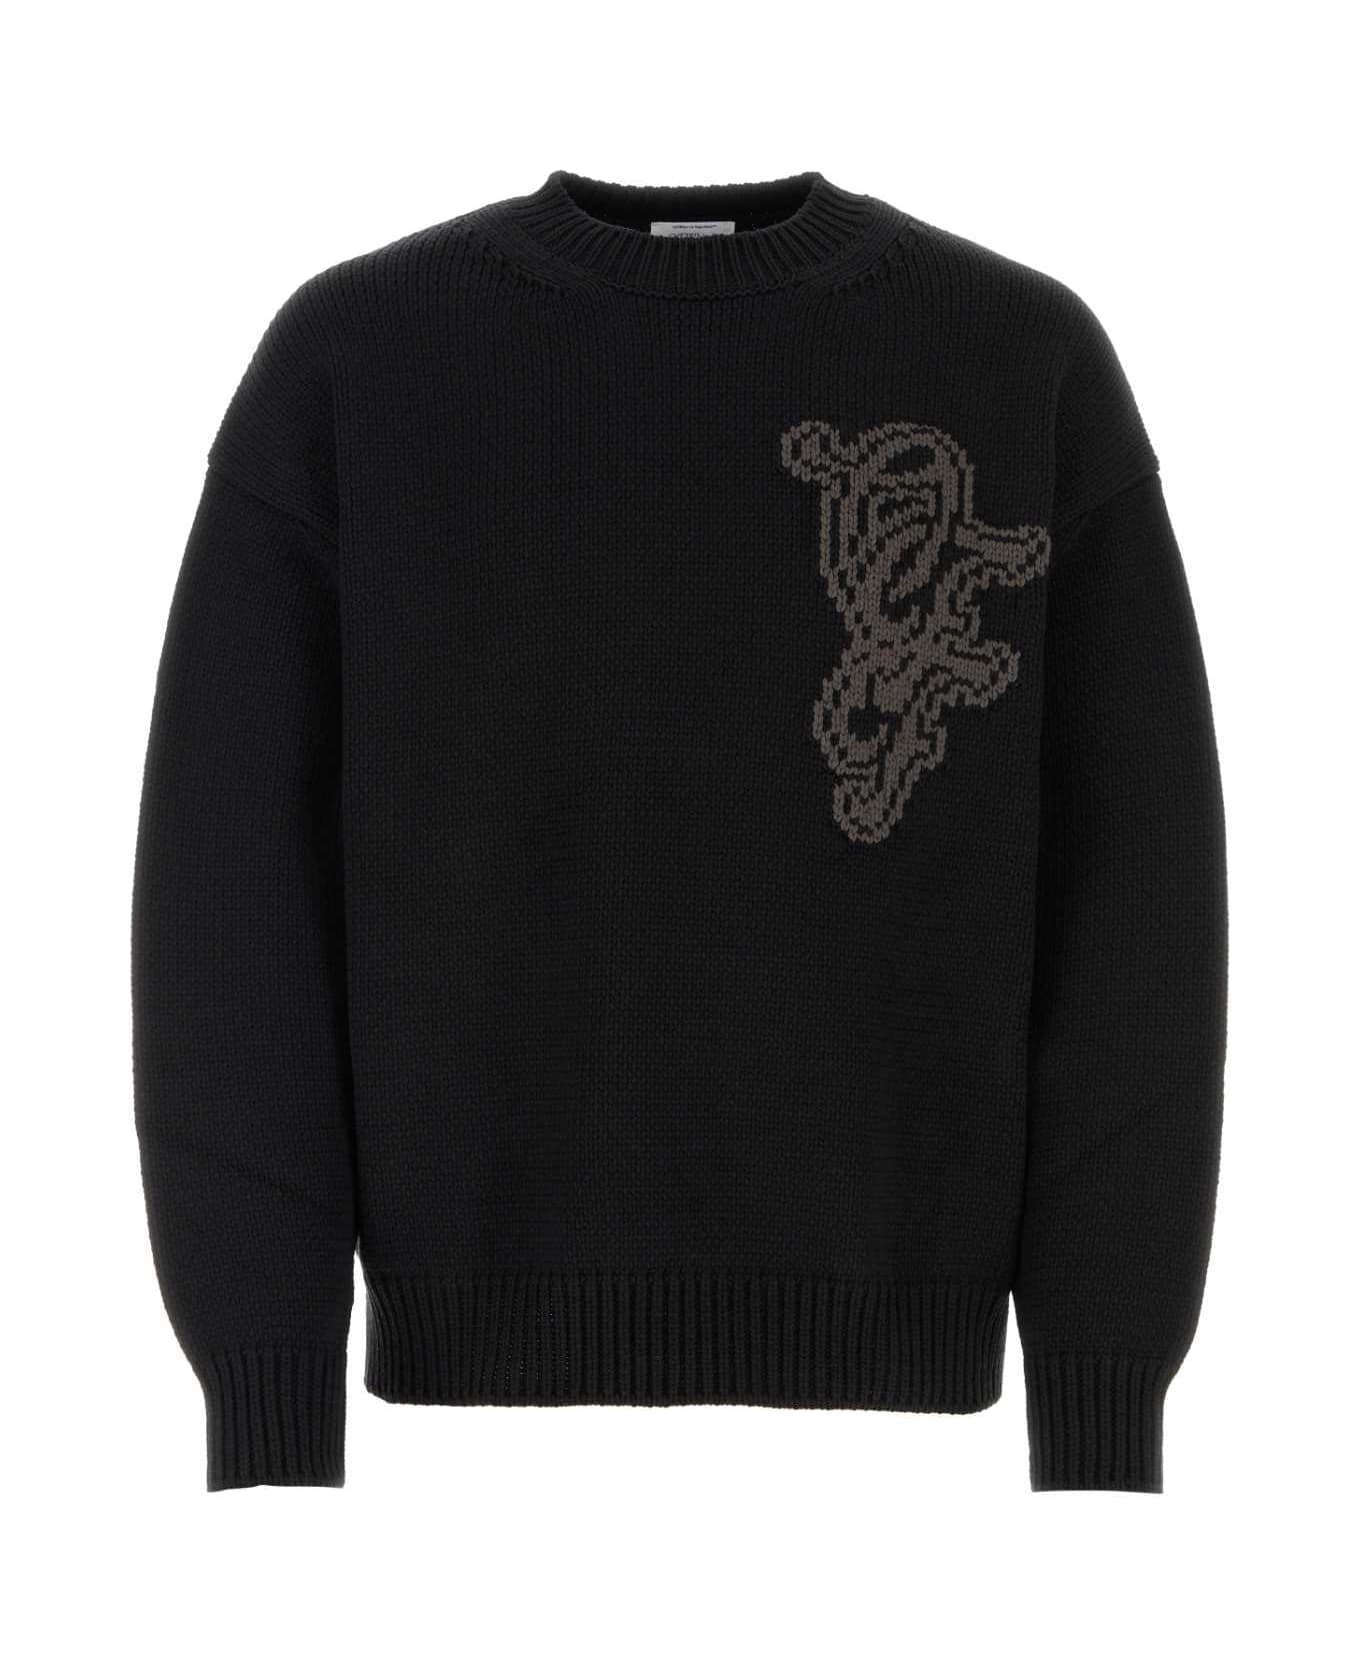 Off-White Black Cotton Blend Oversize Sweater - 1009 ニットウェア